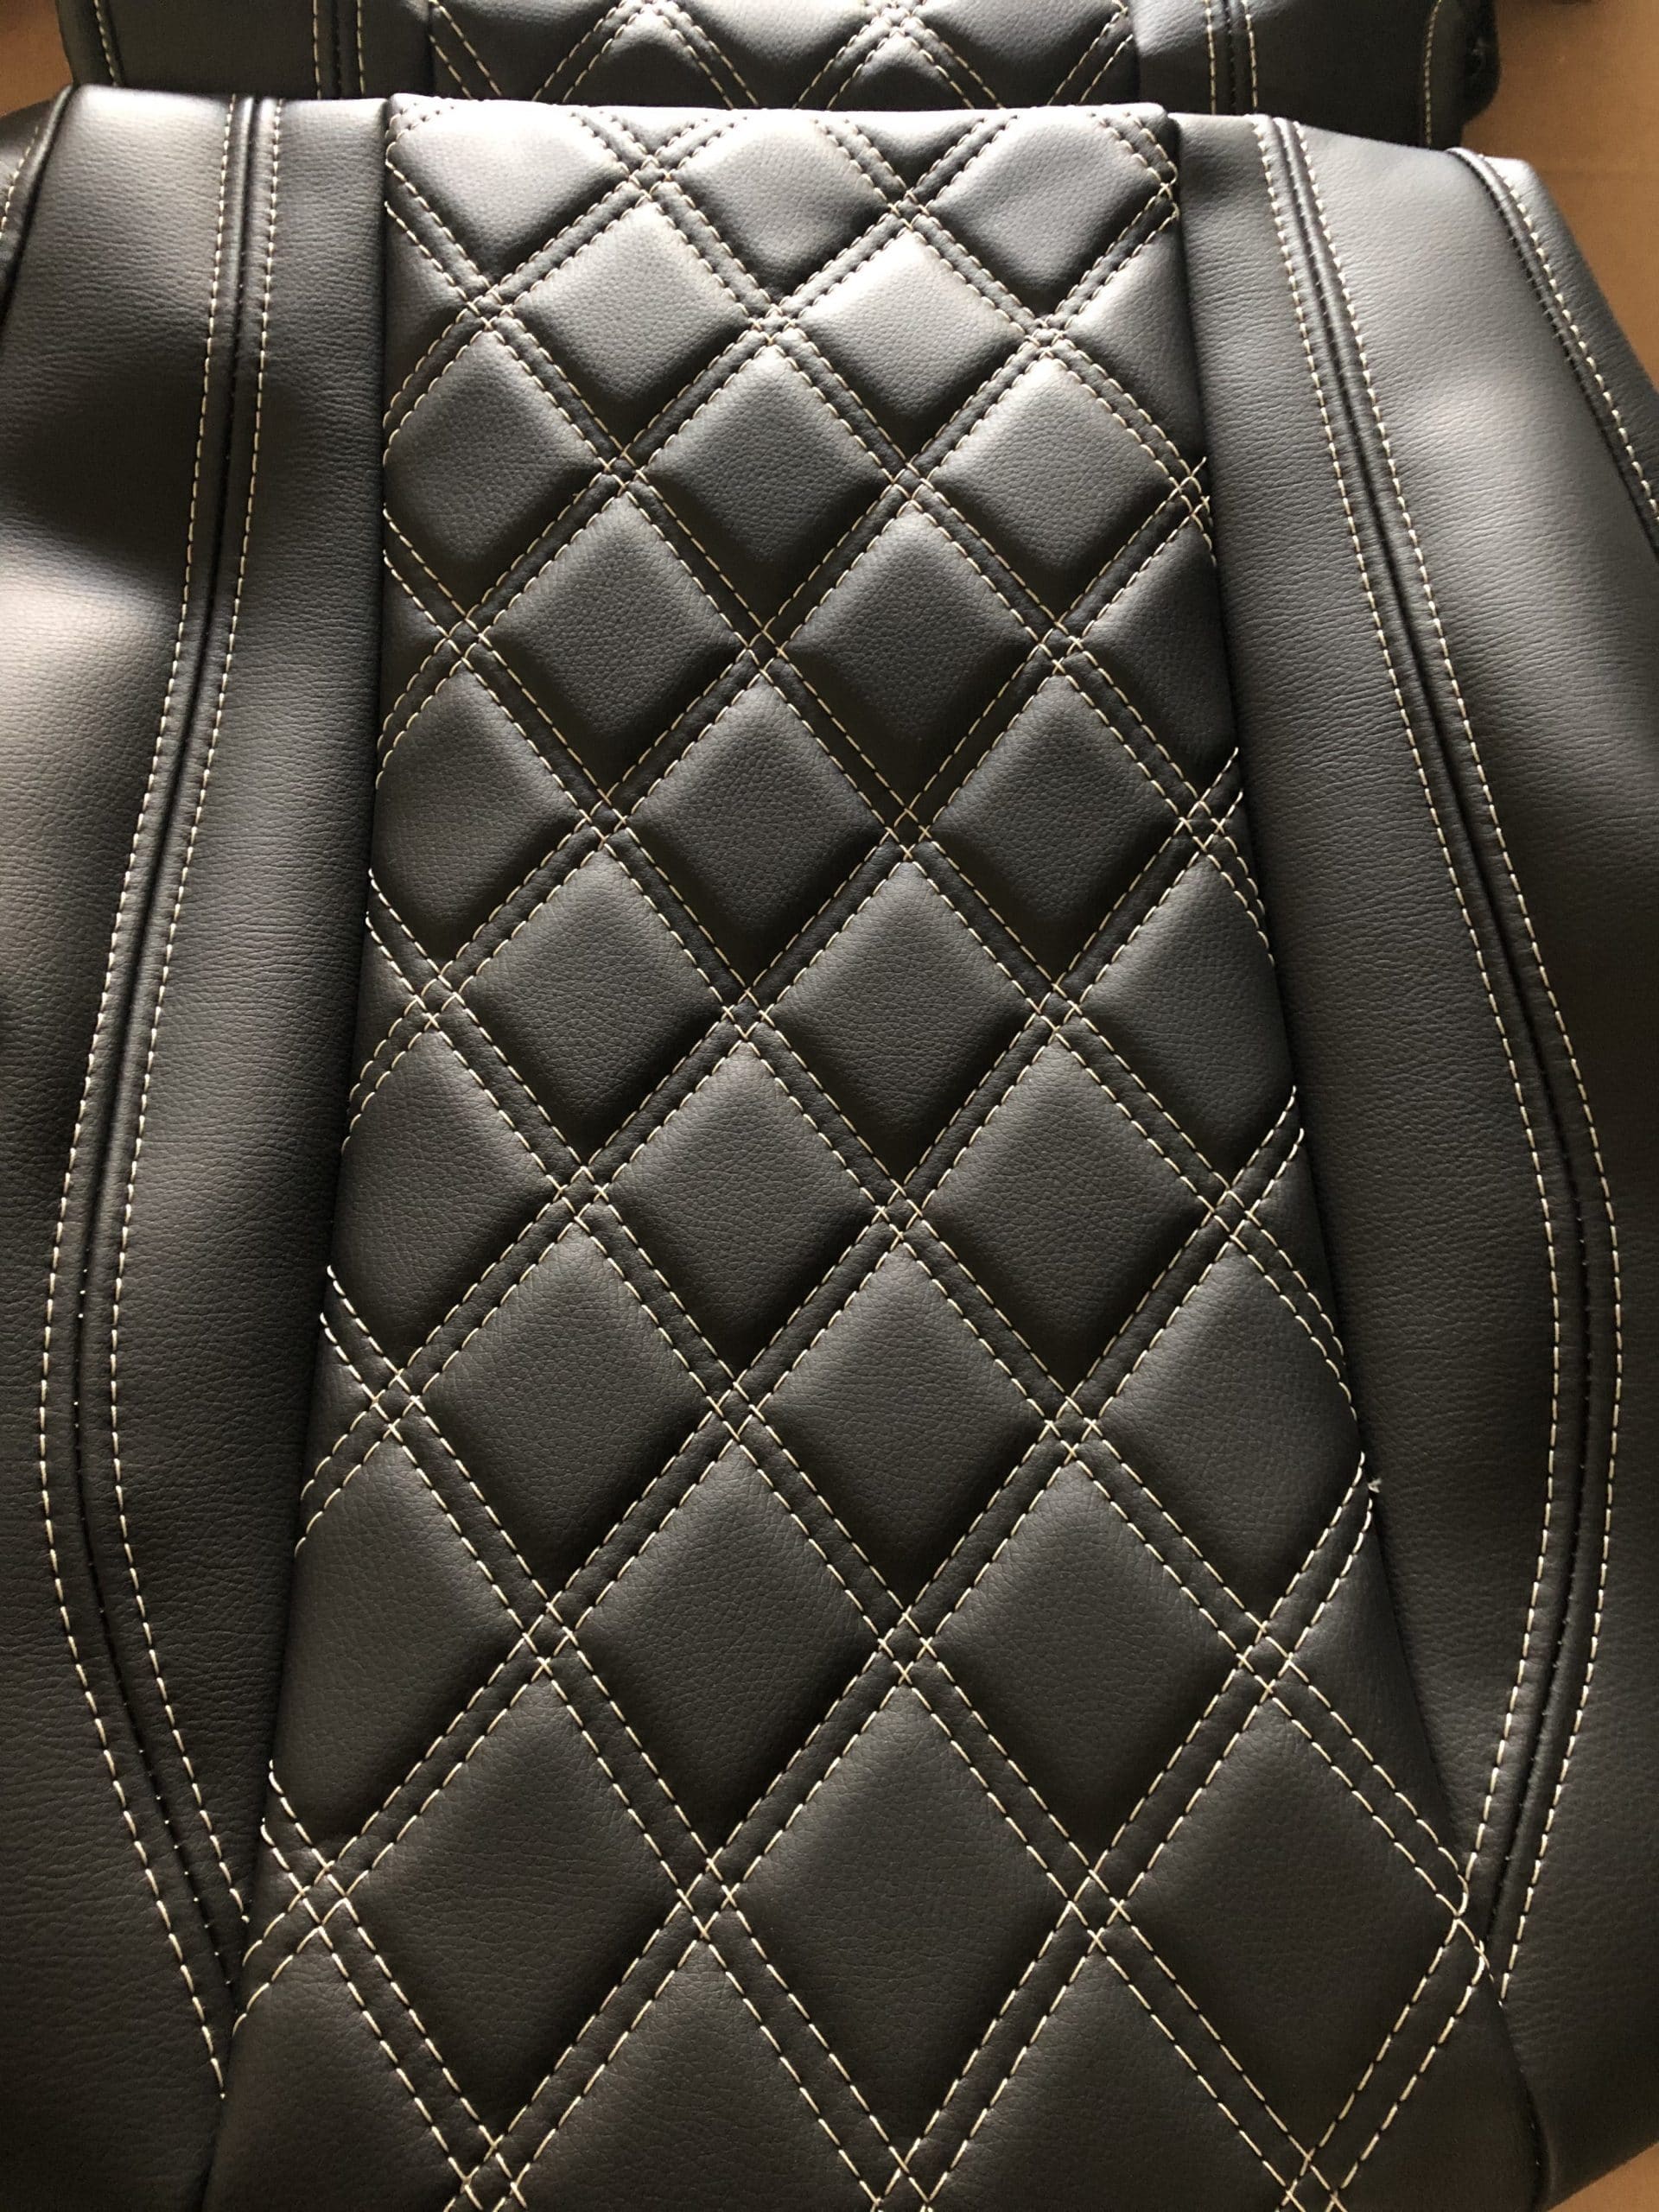 Komplett Sitzbezüge aus Stoff in der Mitte und weißes Leder an den